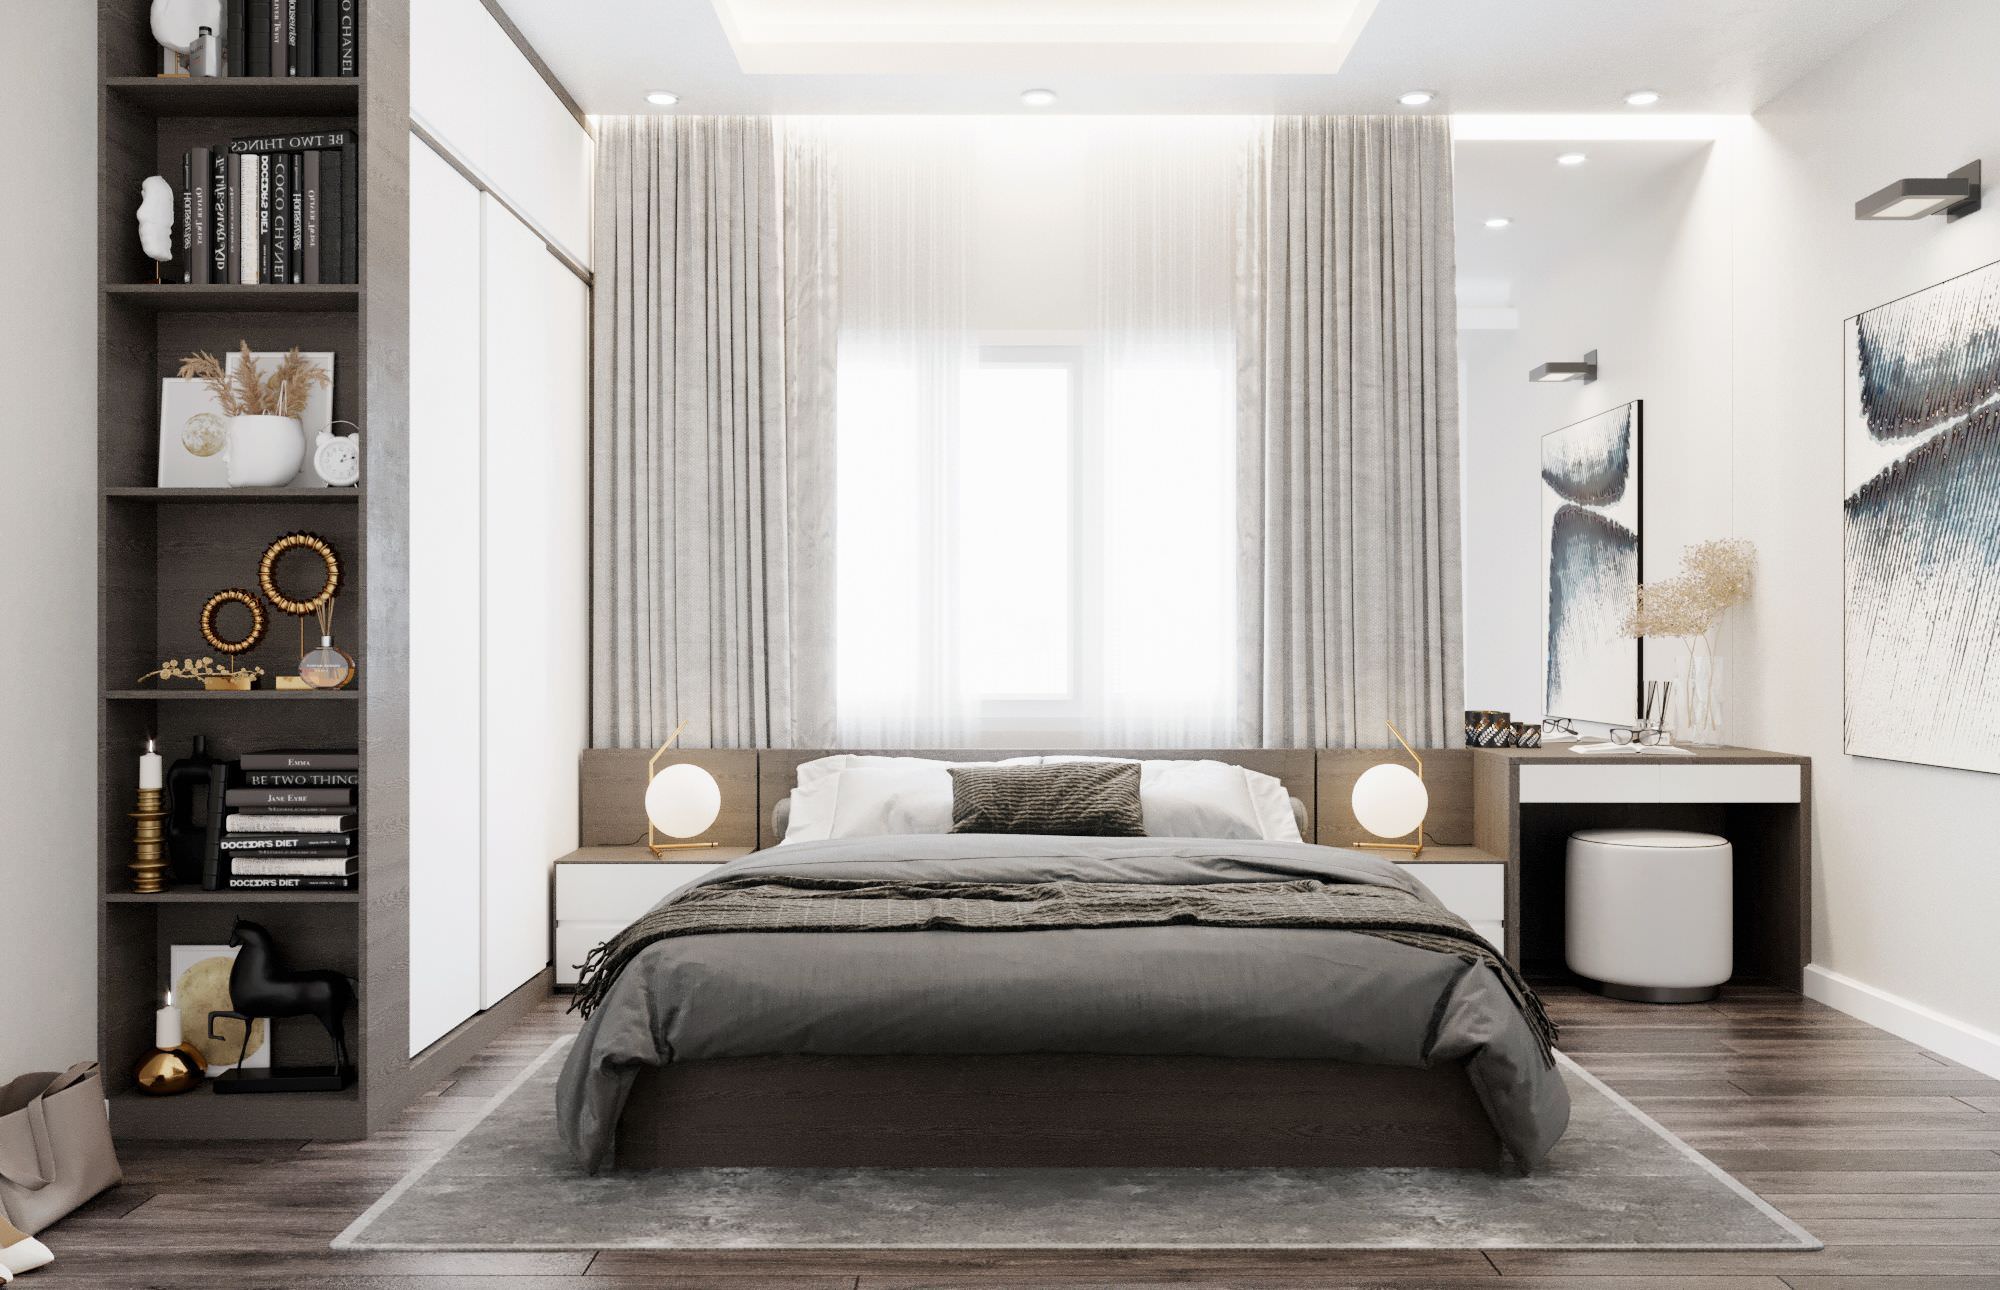 Vách ốp đầu giường cùng tone màu gỗ sáng màu với tone màu chủ đạo của phòng tạo sự hài hòa, kết nối